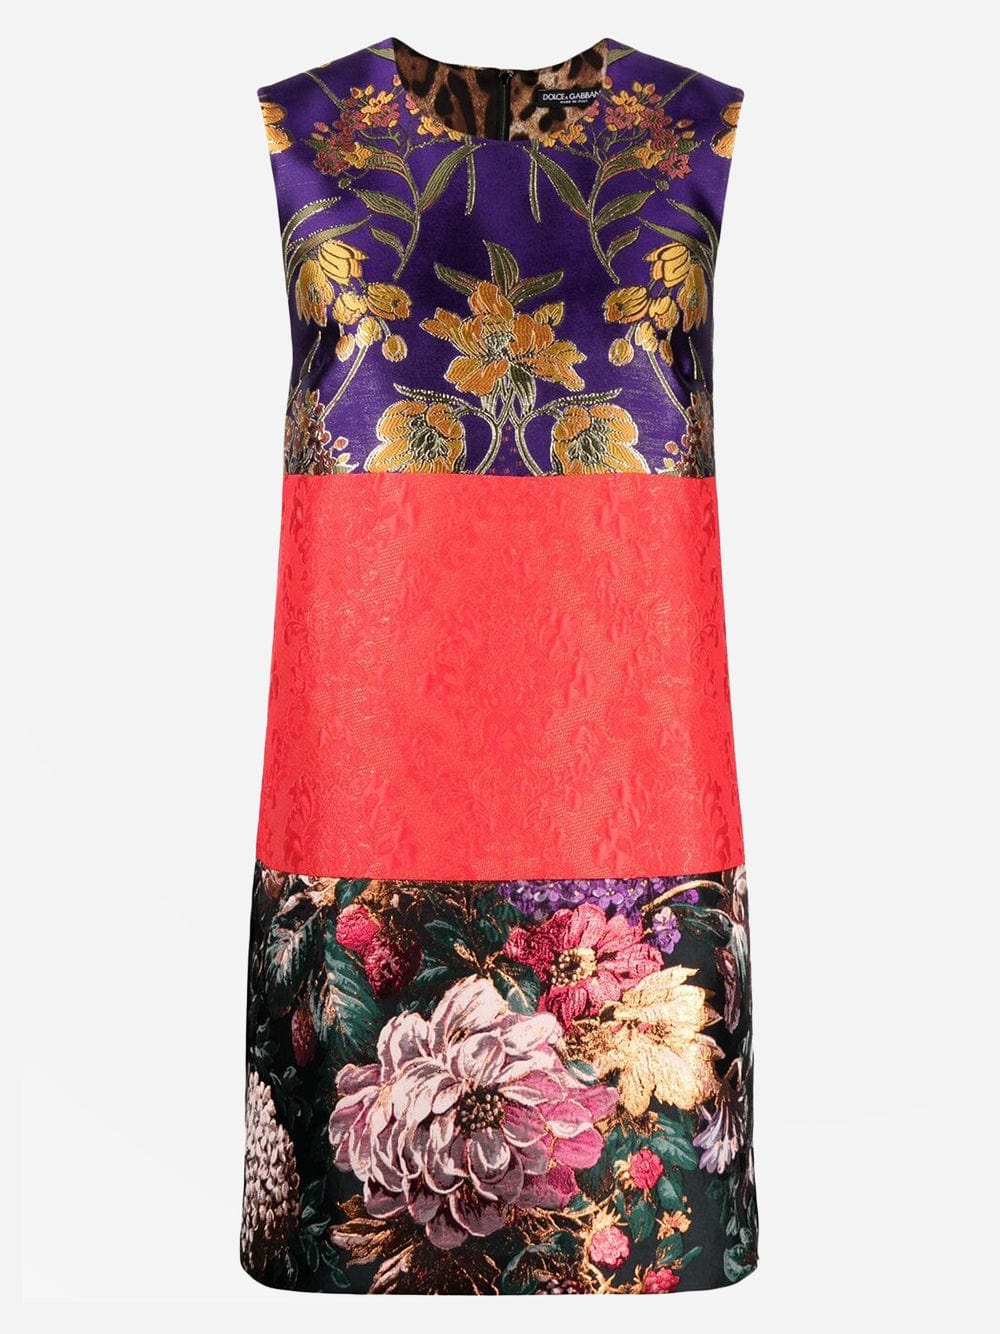 Dolce & Gabbana Jacquard-Woven Shift Dress